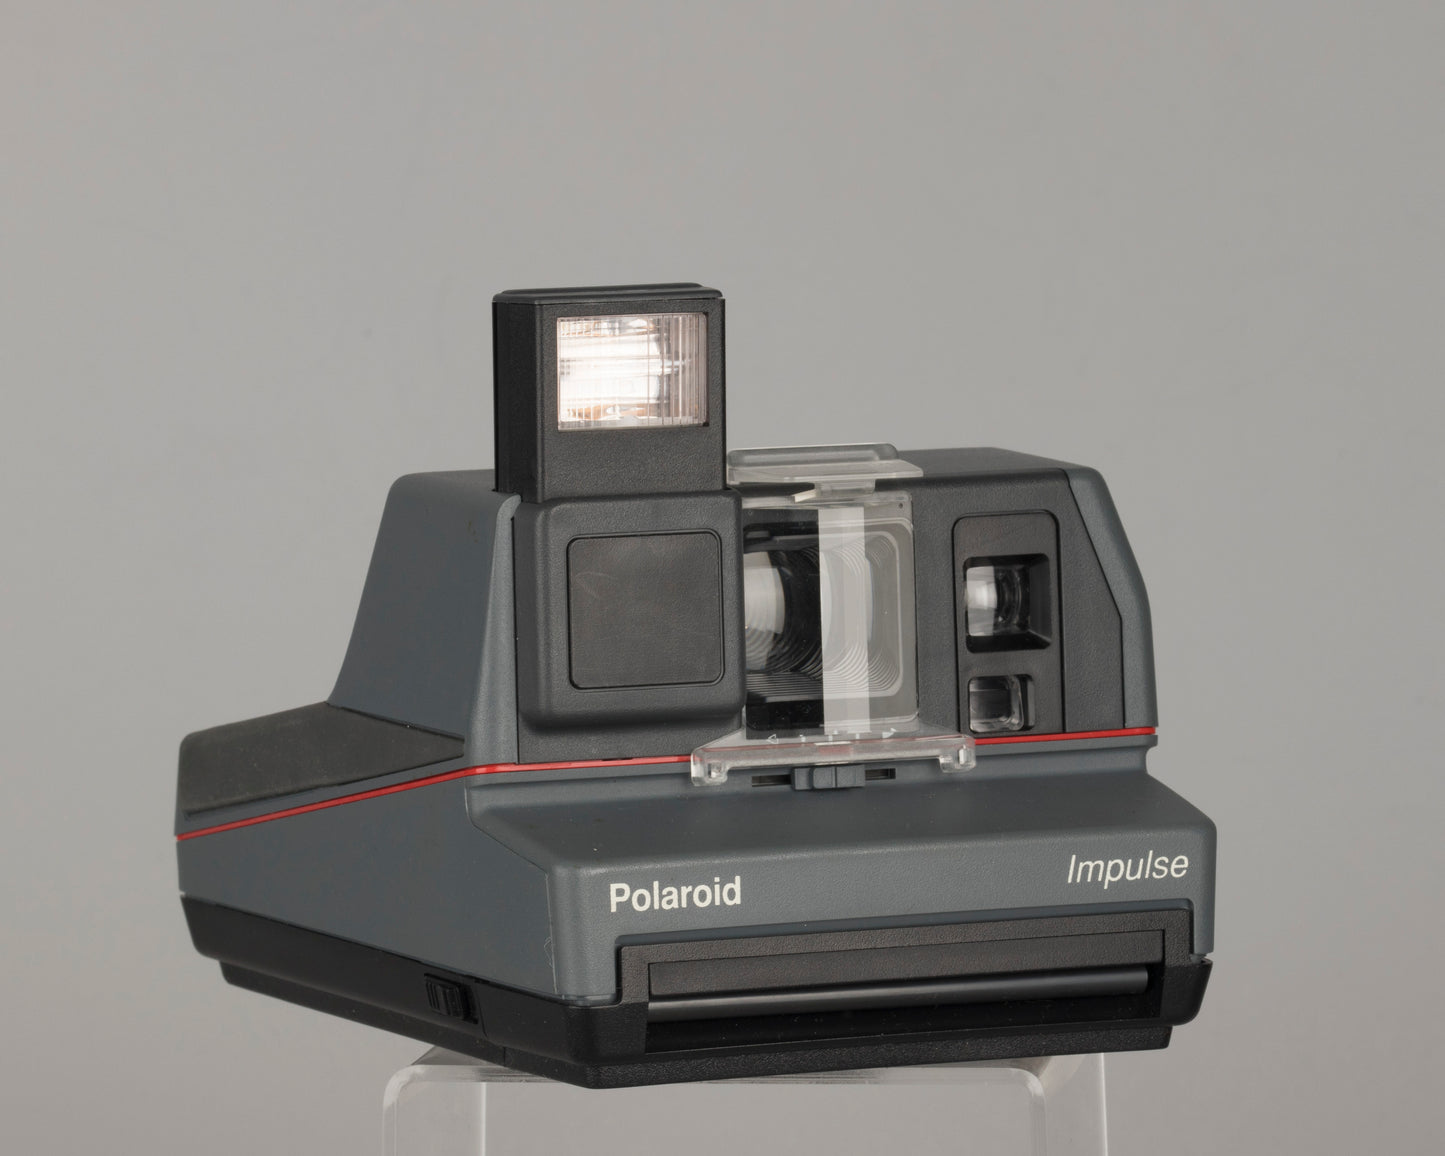 Appareil photo instantané Polaroid Impulse avec étui d'origine, filtre à prisme, boîte et manuel